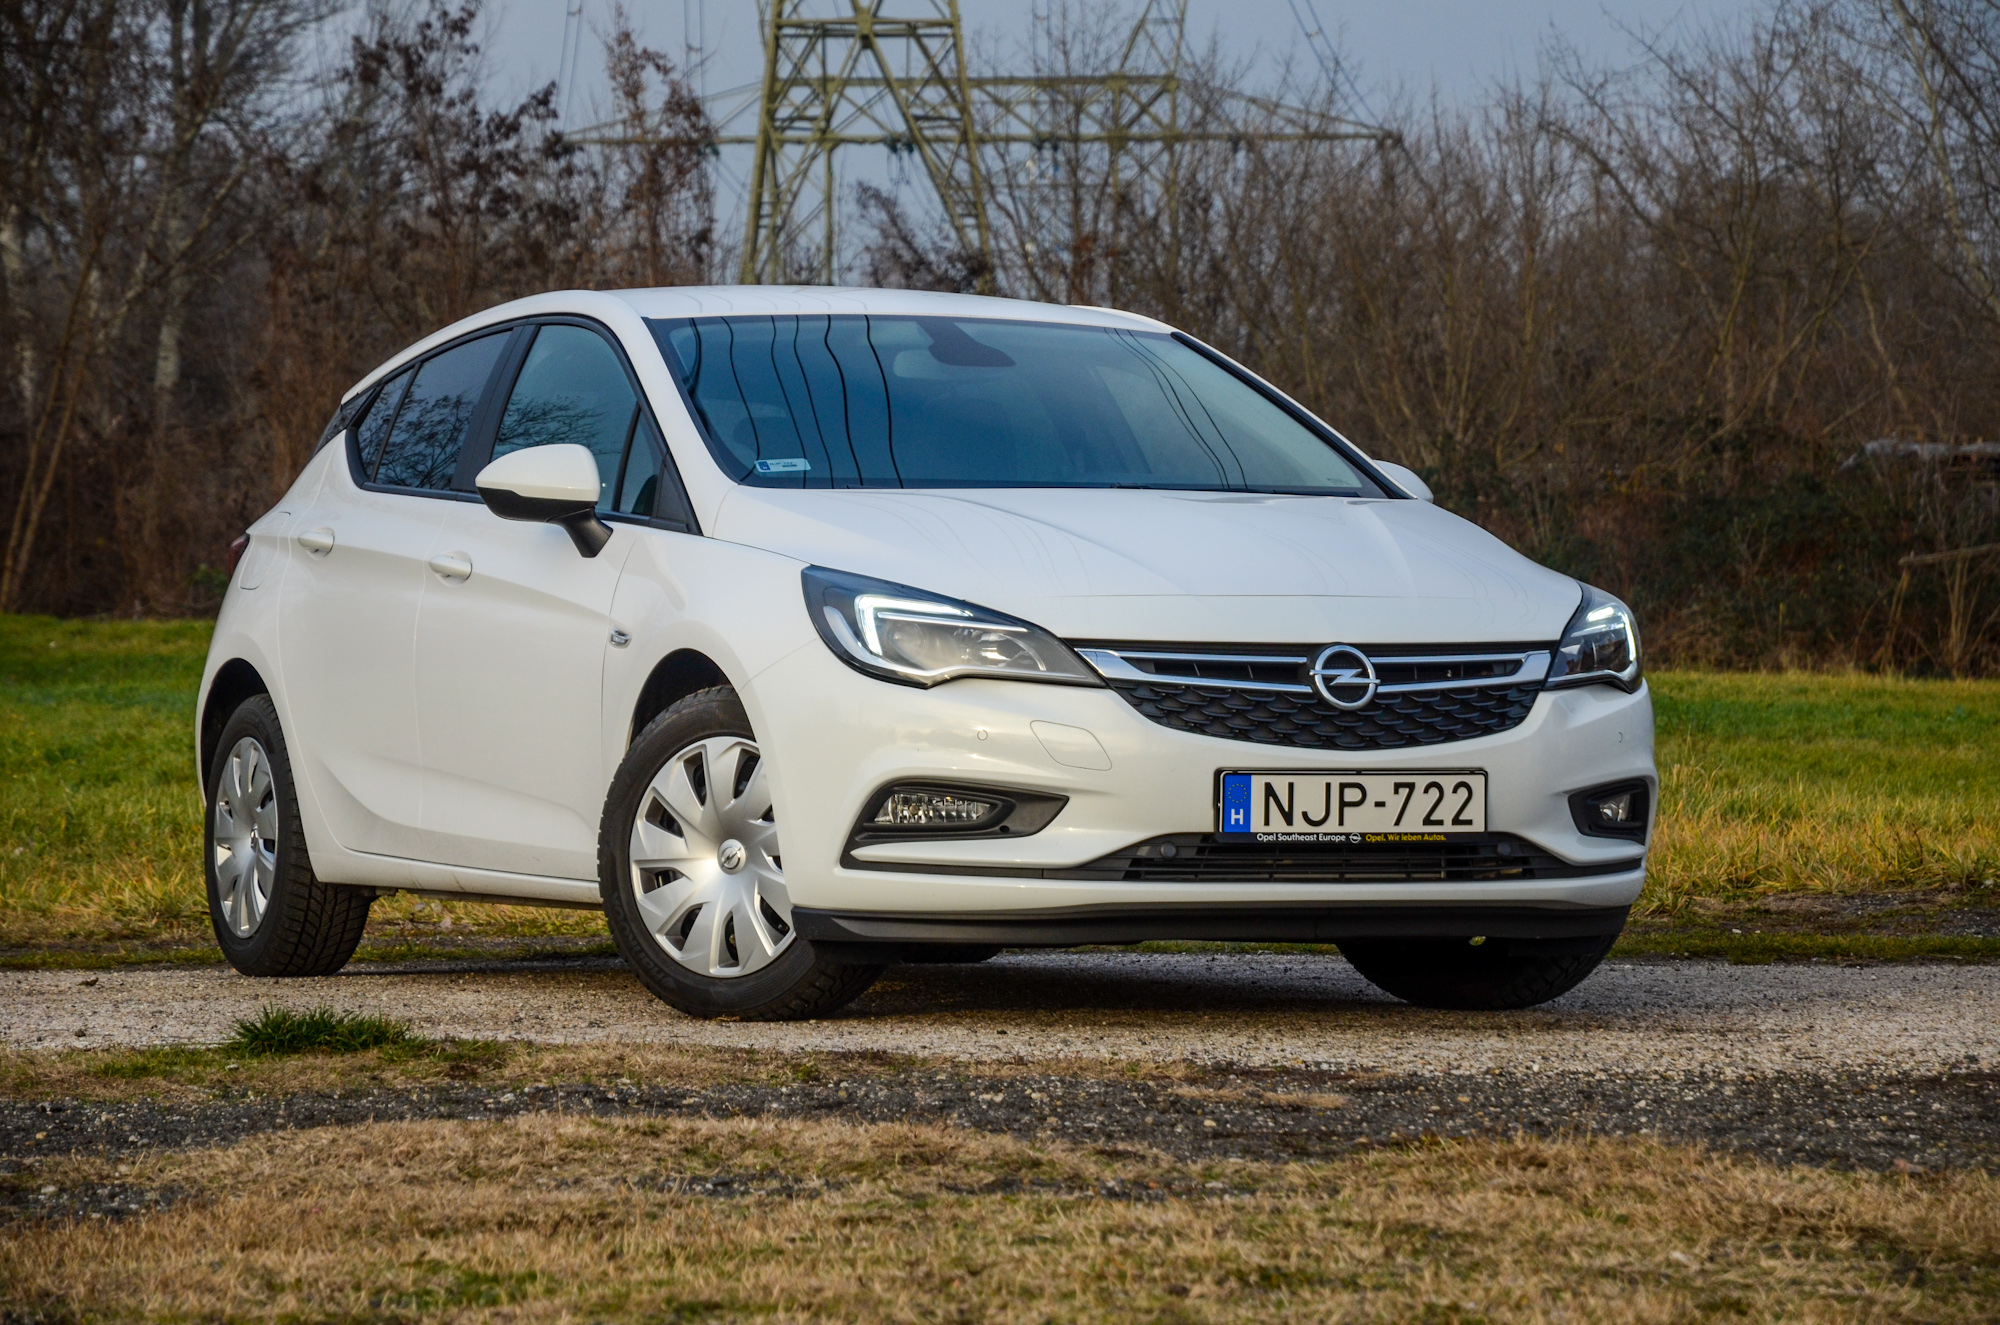 Három hengerrel is élmény - Opel Astra 1.0 Turbo teszt